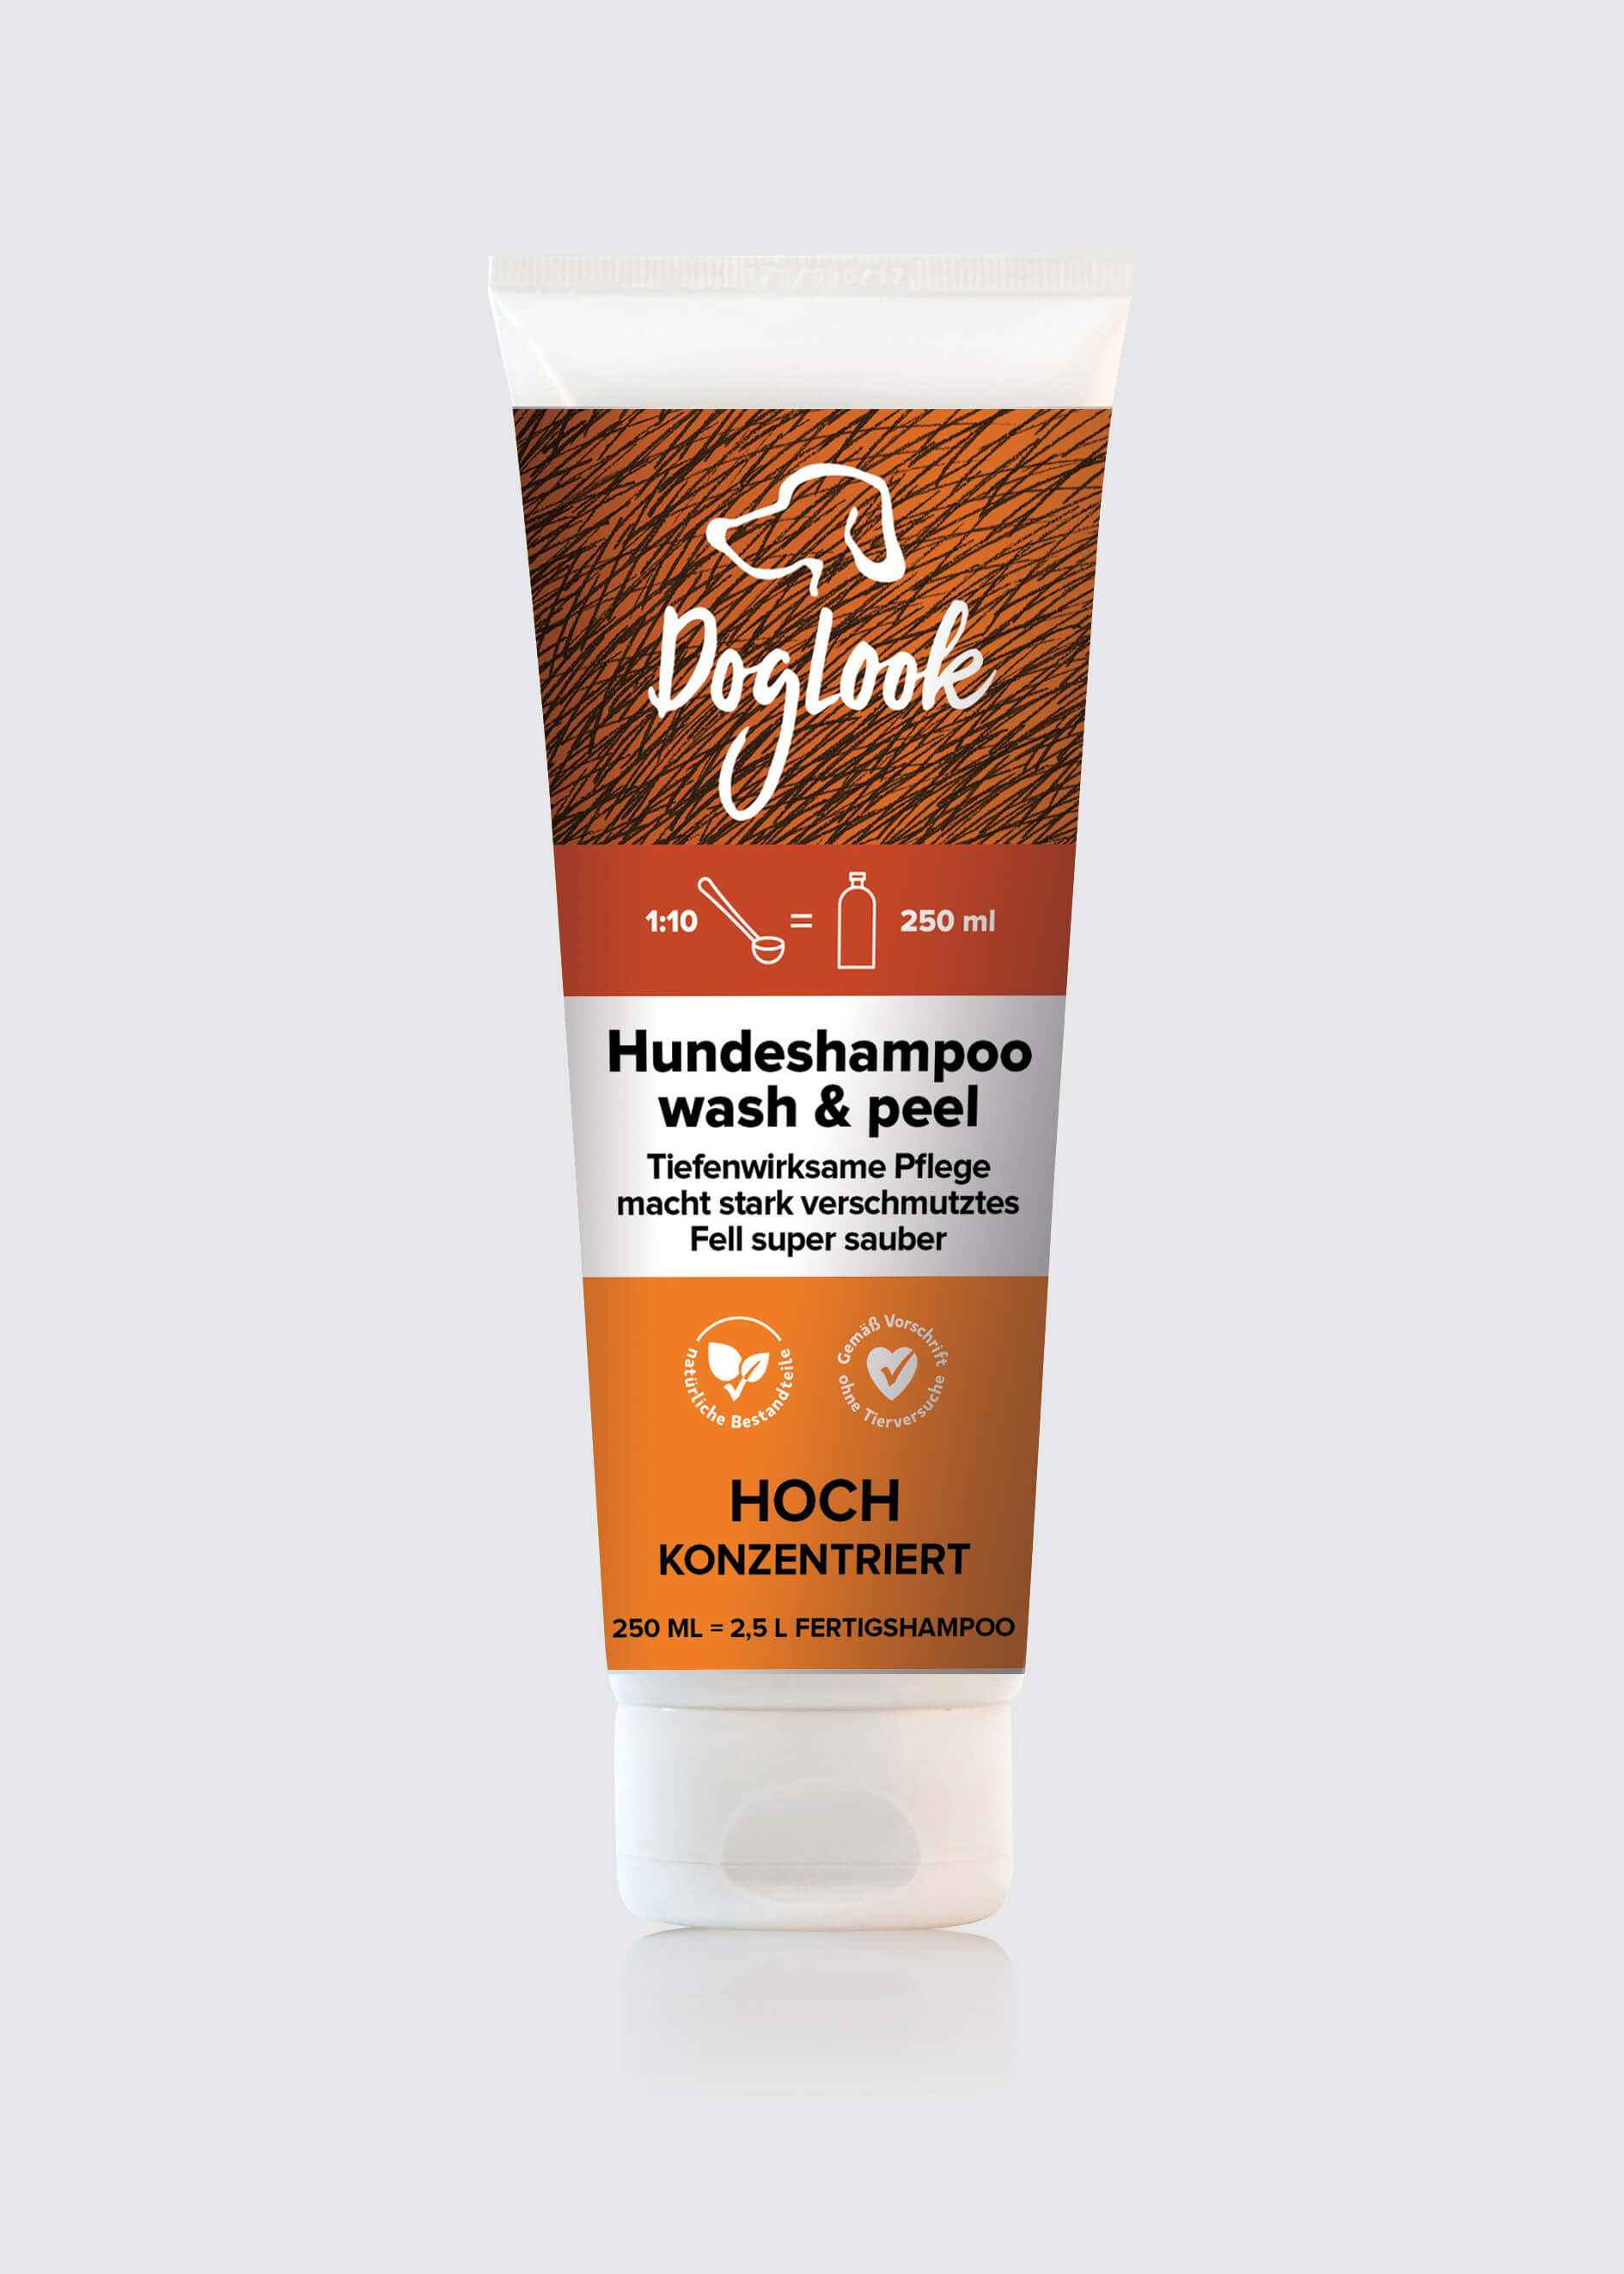 DOGLOOK Wash & Peel Dog Shampoo